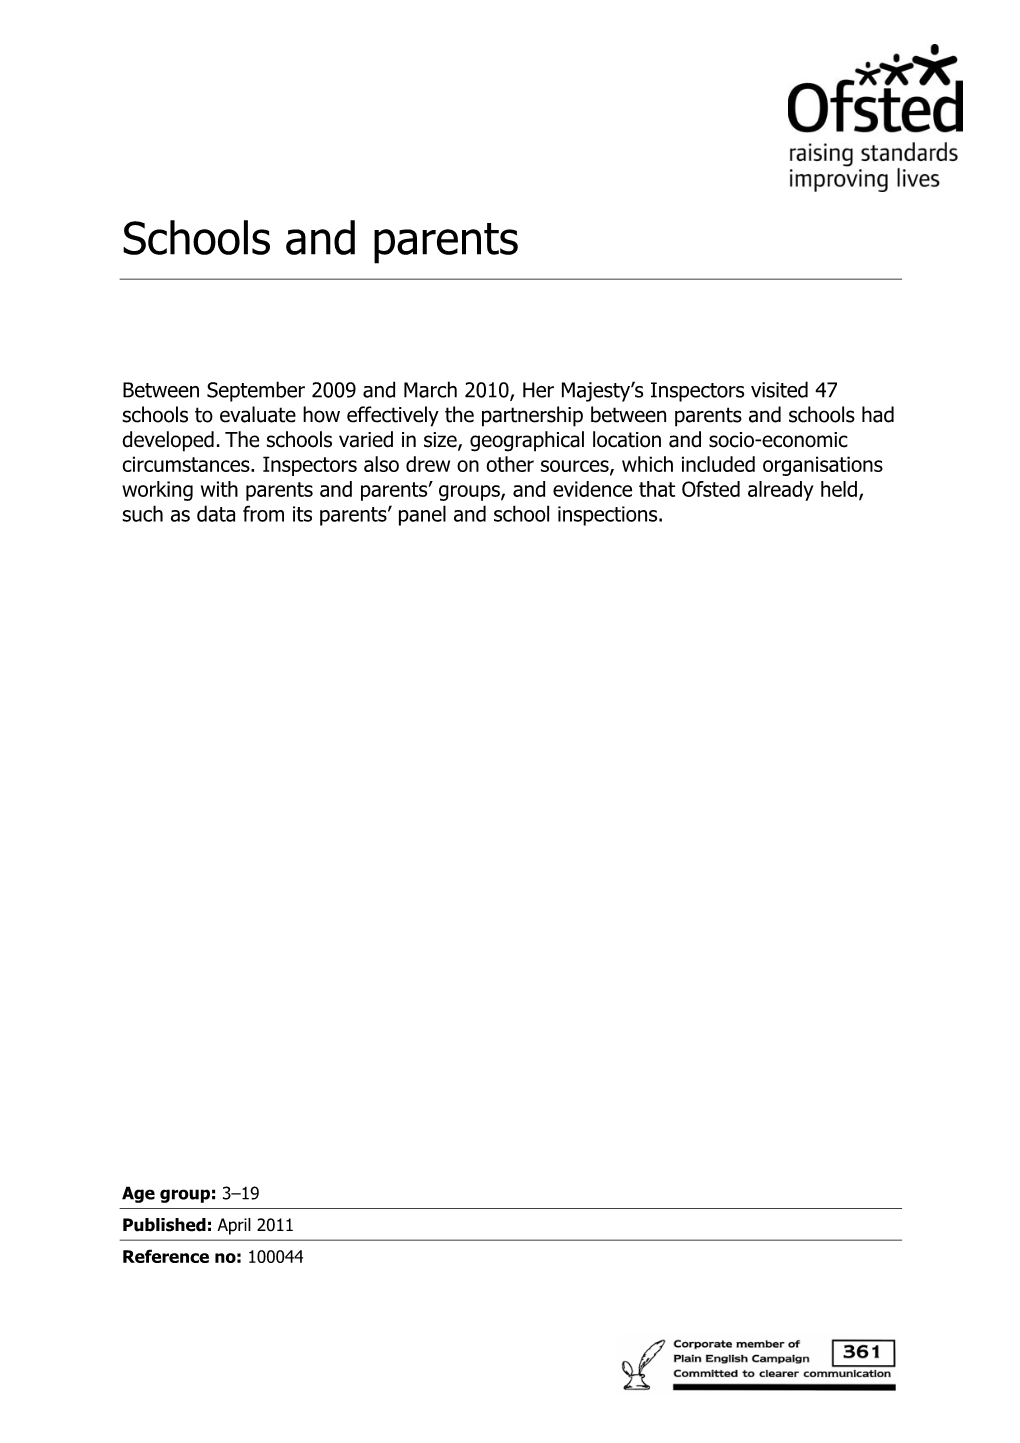 Schools and Parents